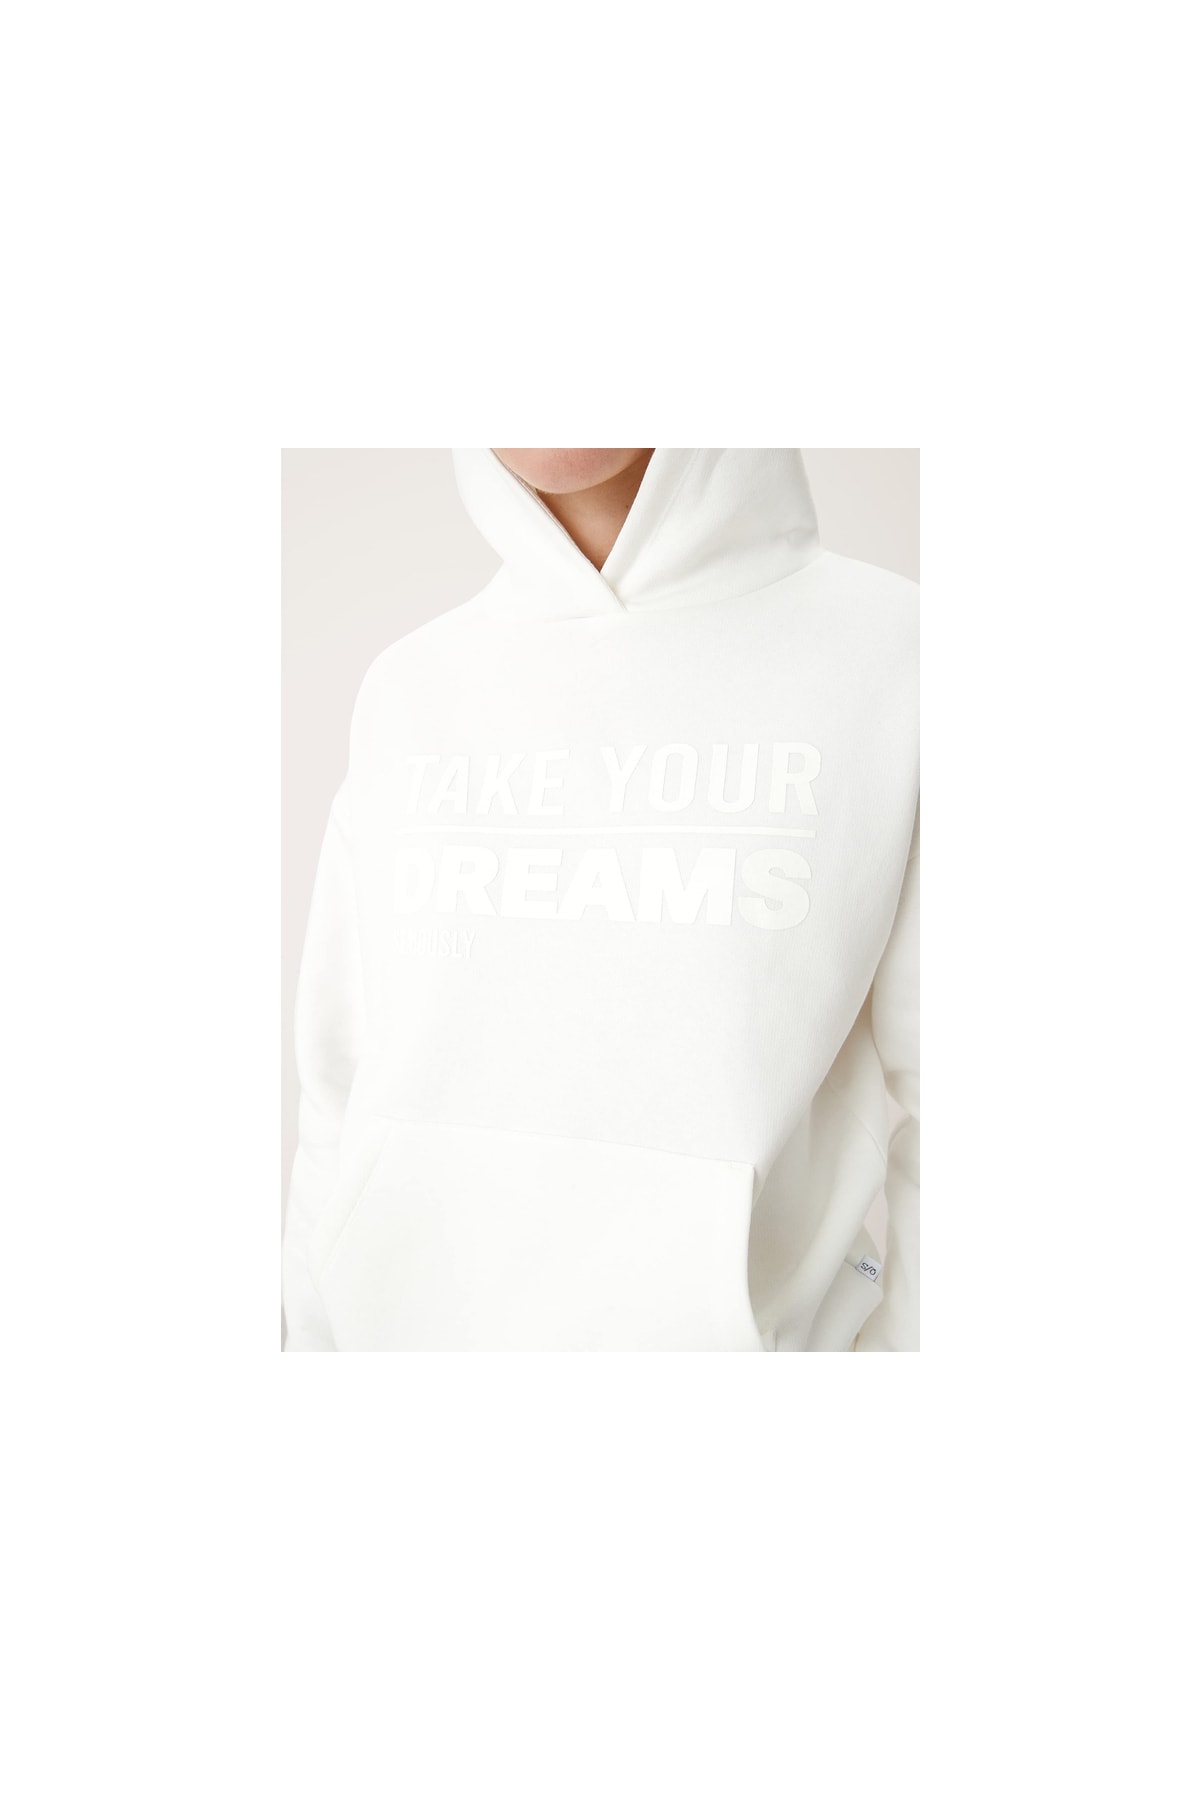 QS Pullover Weiß Regular Fit Fast ausverkauft ER8483